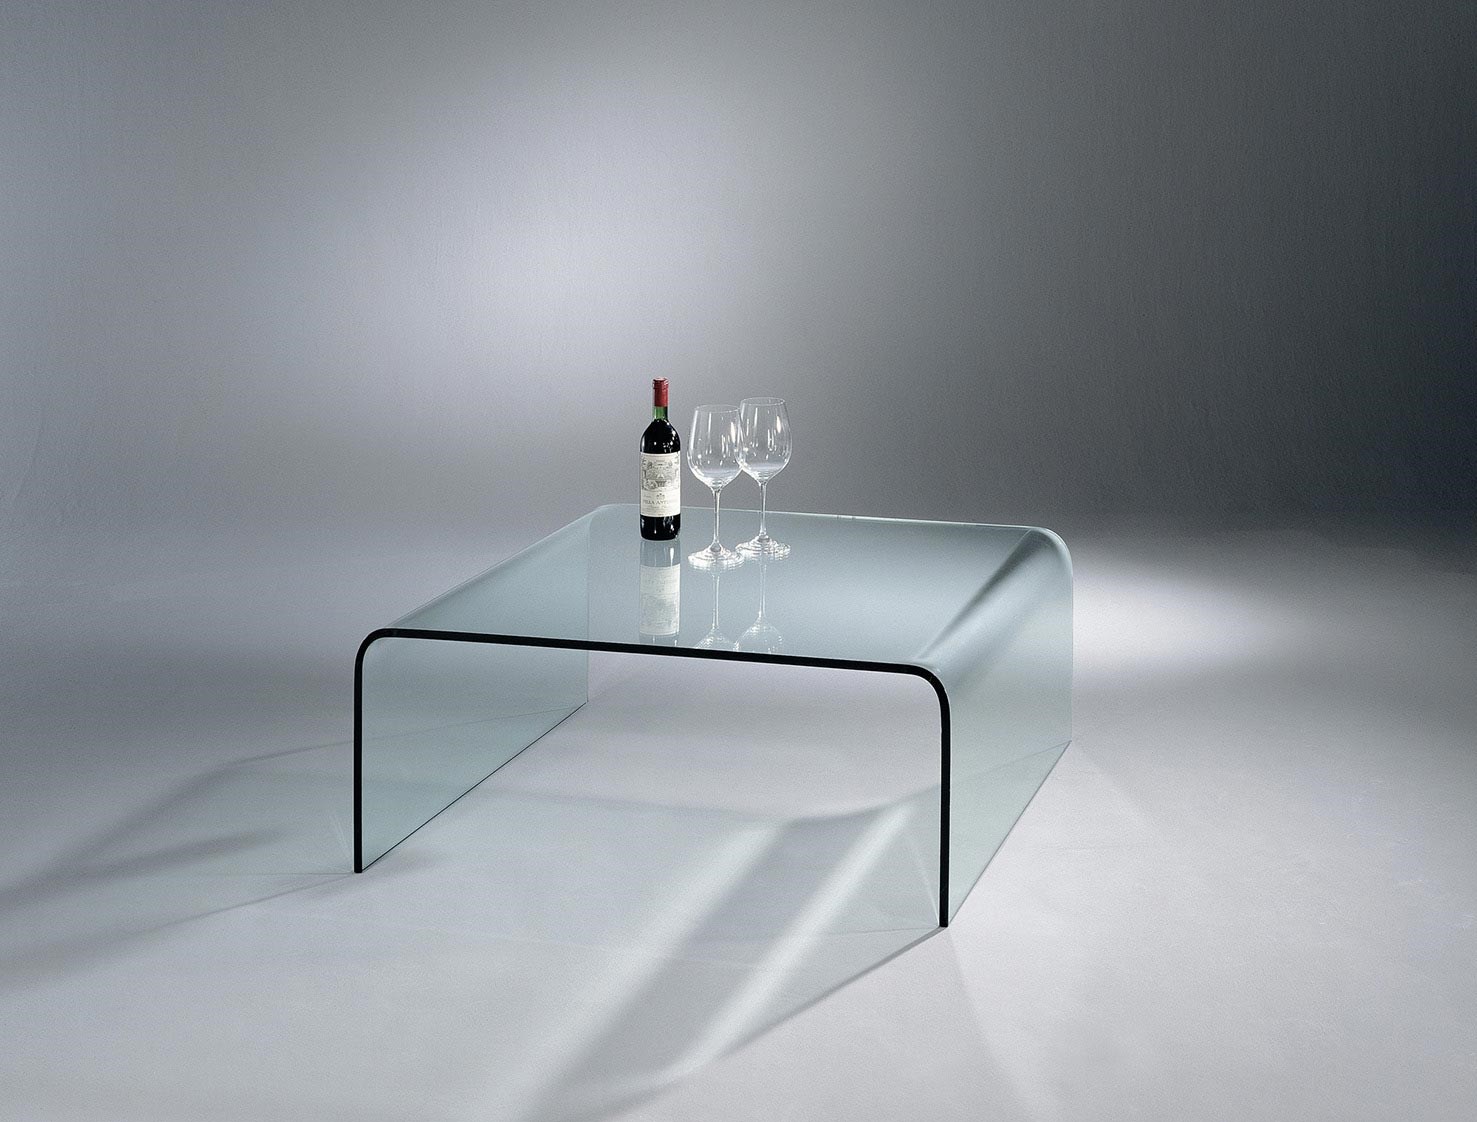 Gebogener Glascouchtisch UT von DREIECK DESIGN: UT 25 - Floatglas